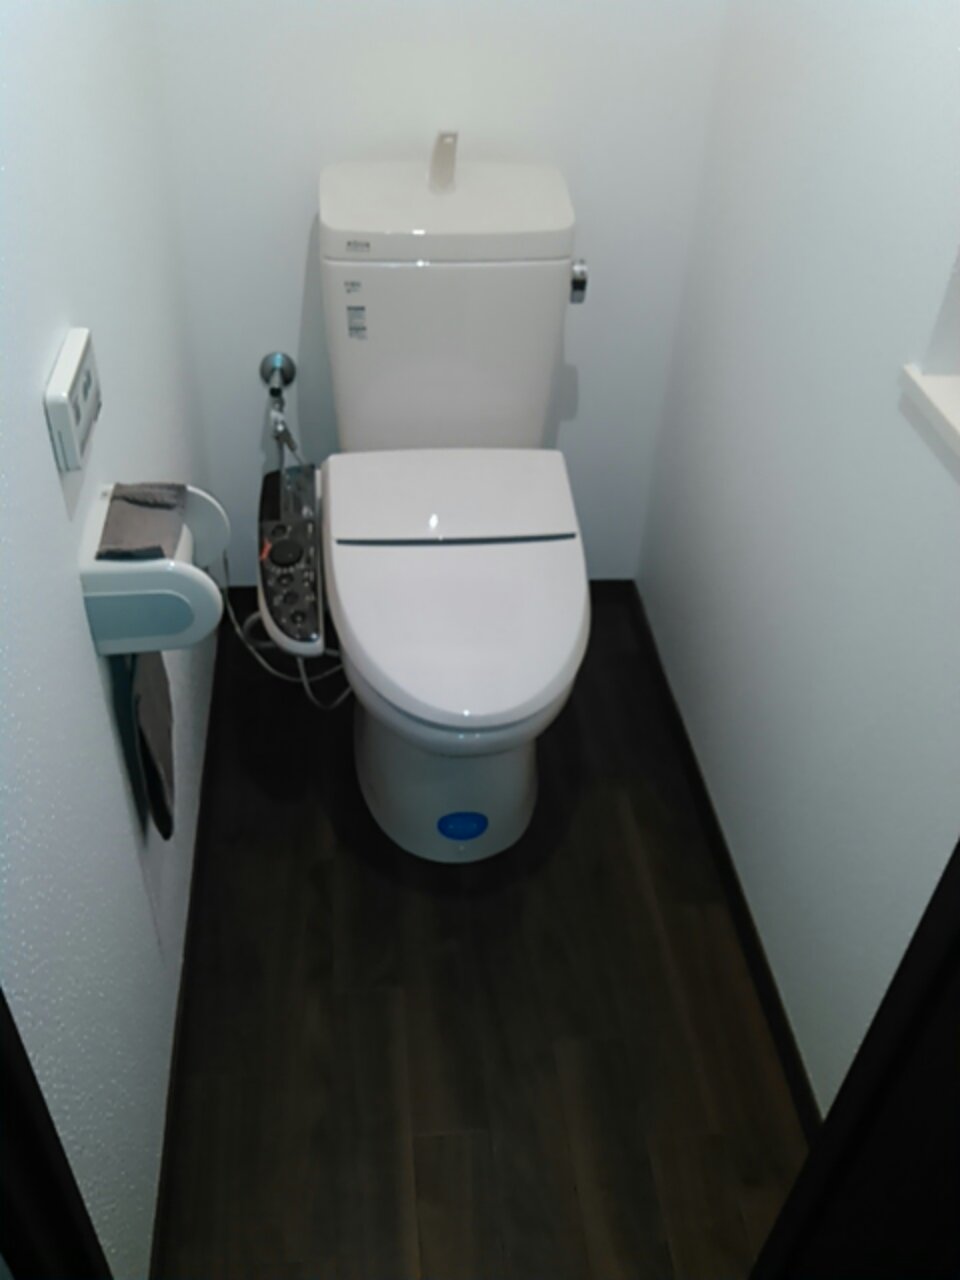 リクシルのトイレ交換-シャワートイレKシリーズ - Handymanリフォームブログ